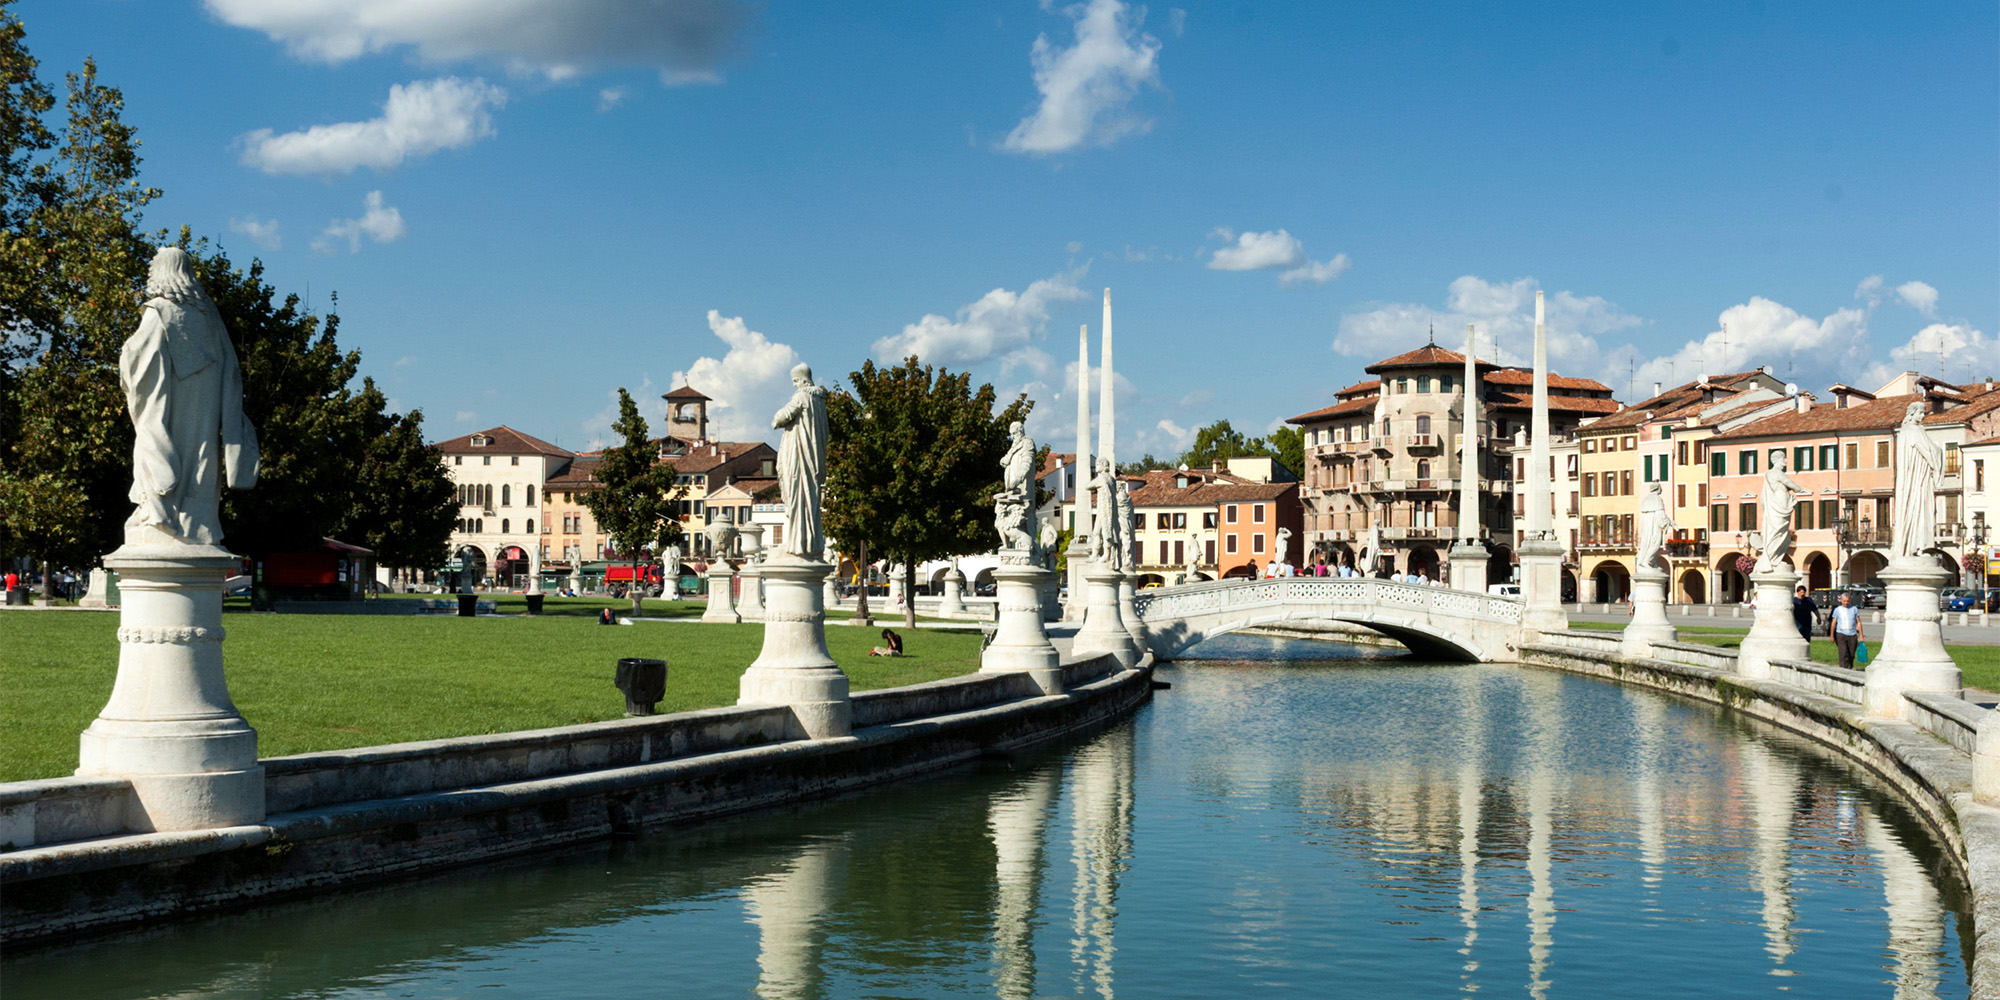 Padua, City of Waters